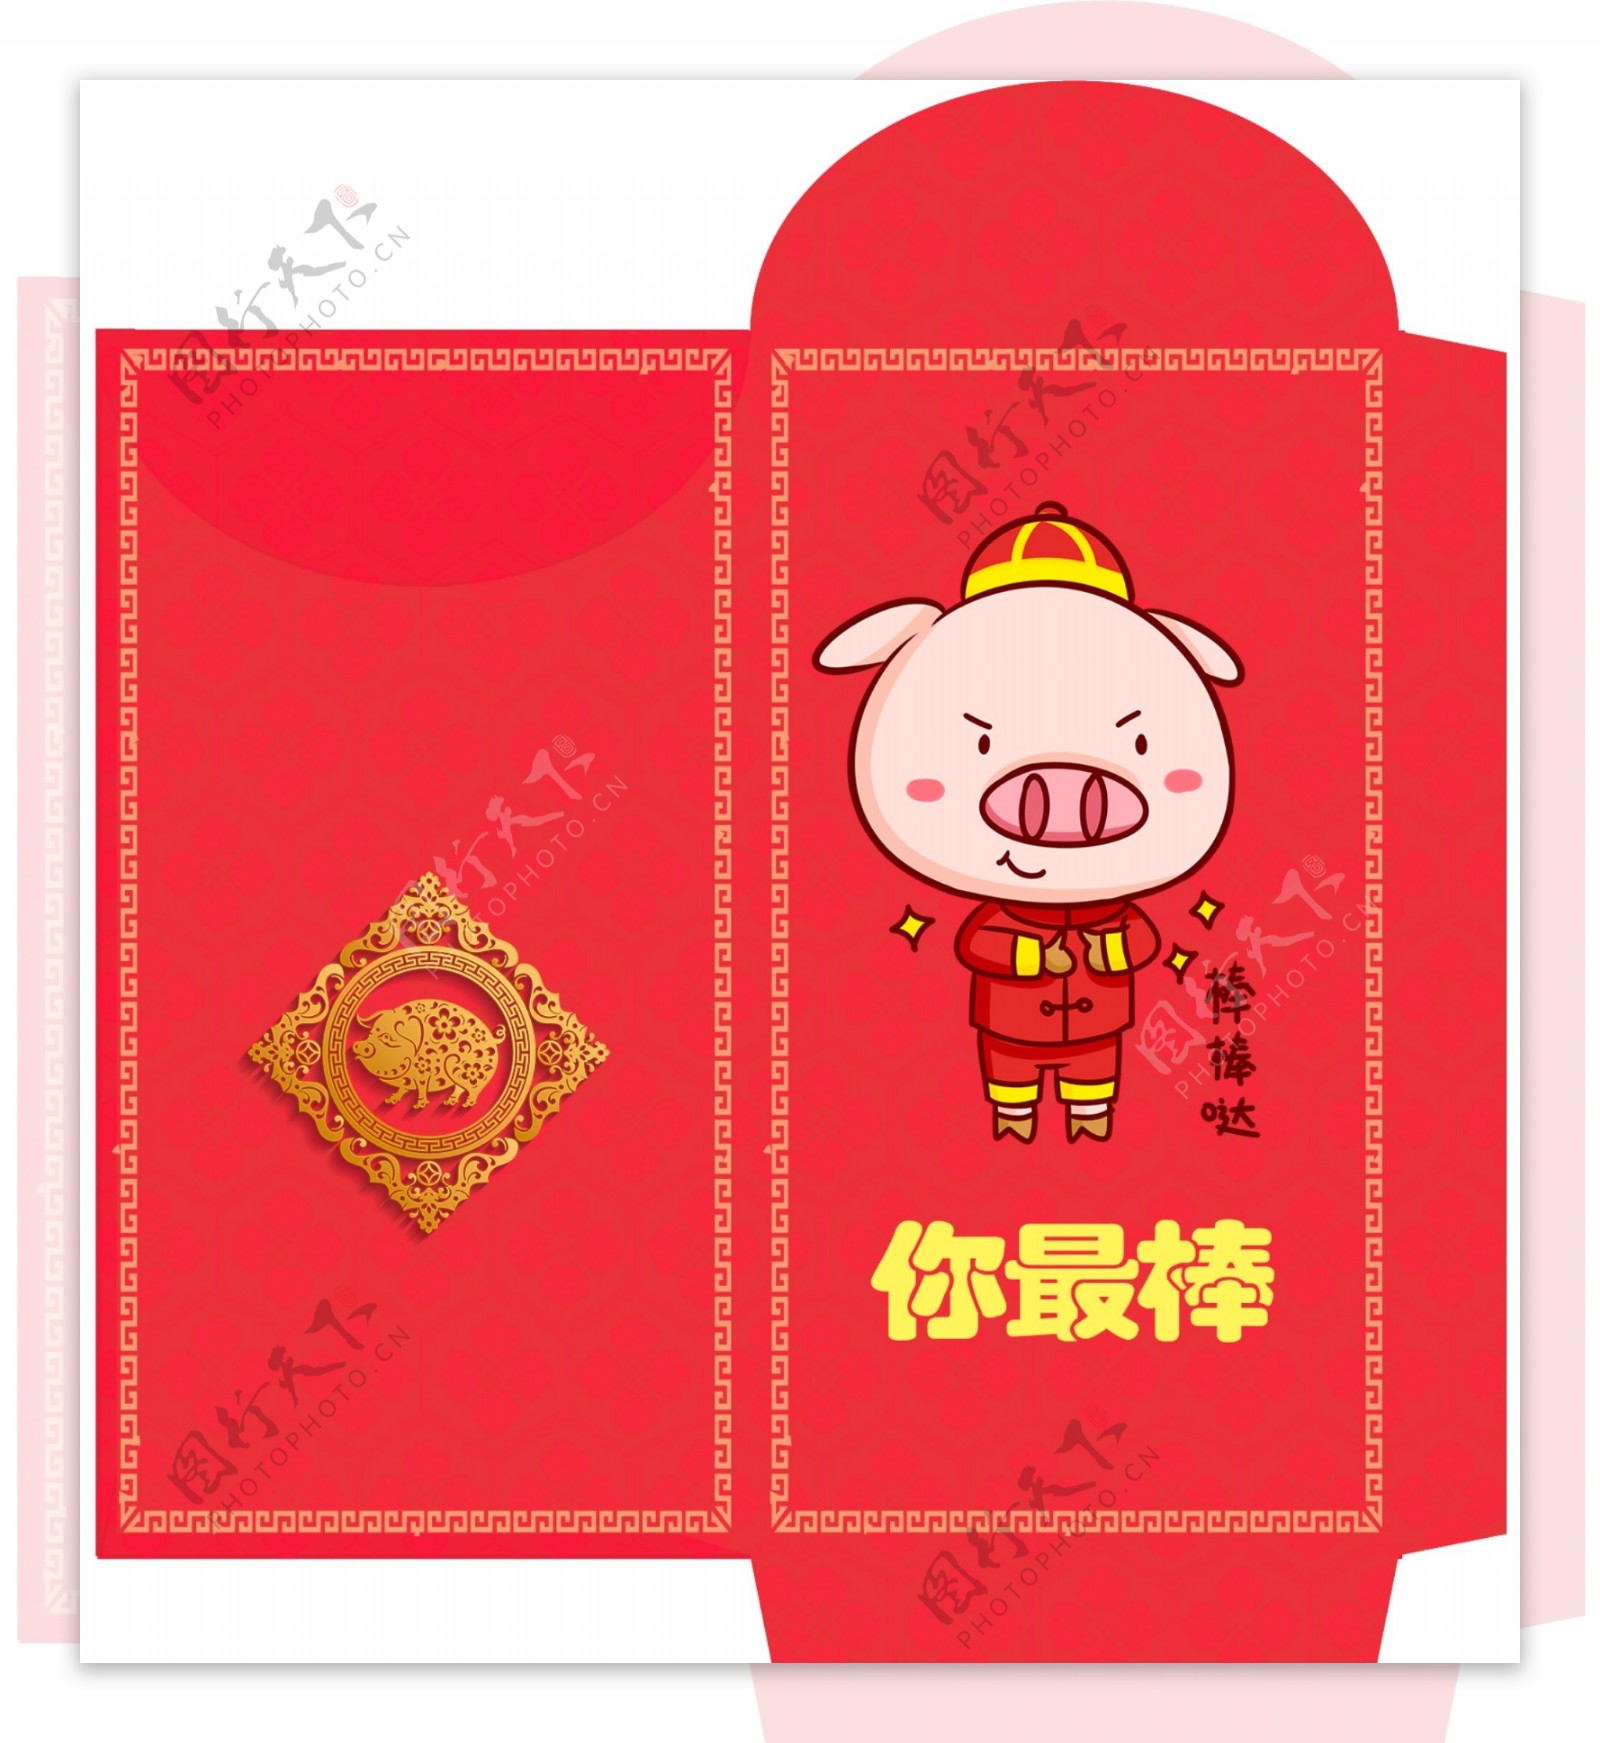 时尚炫丽2019猪年红包模板设计